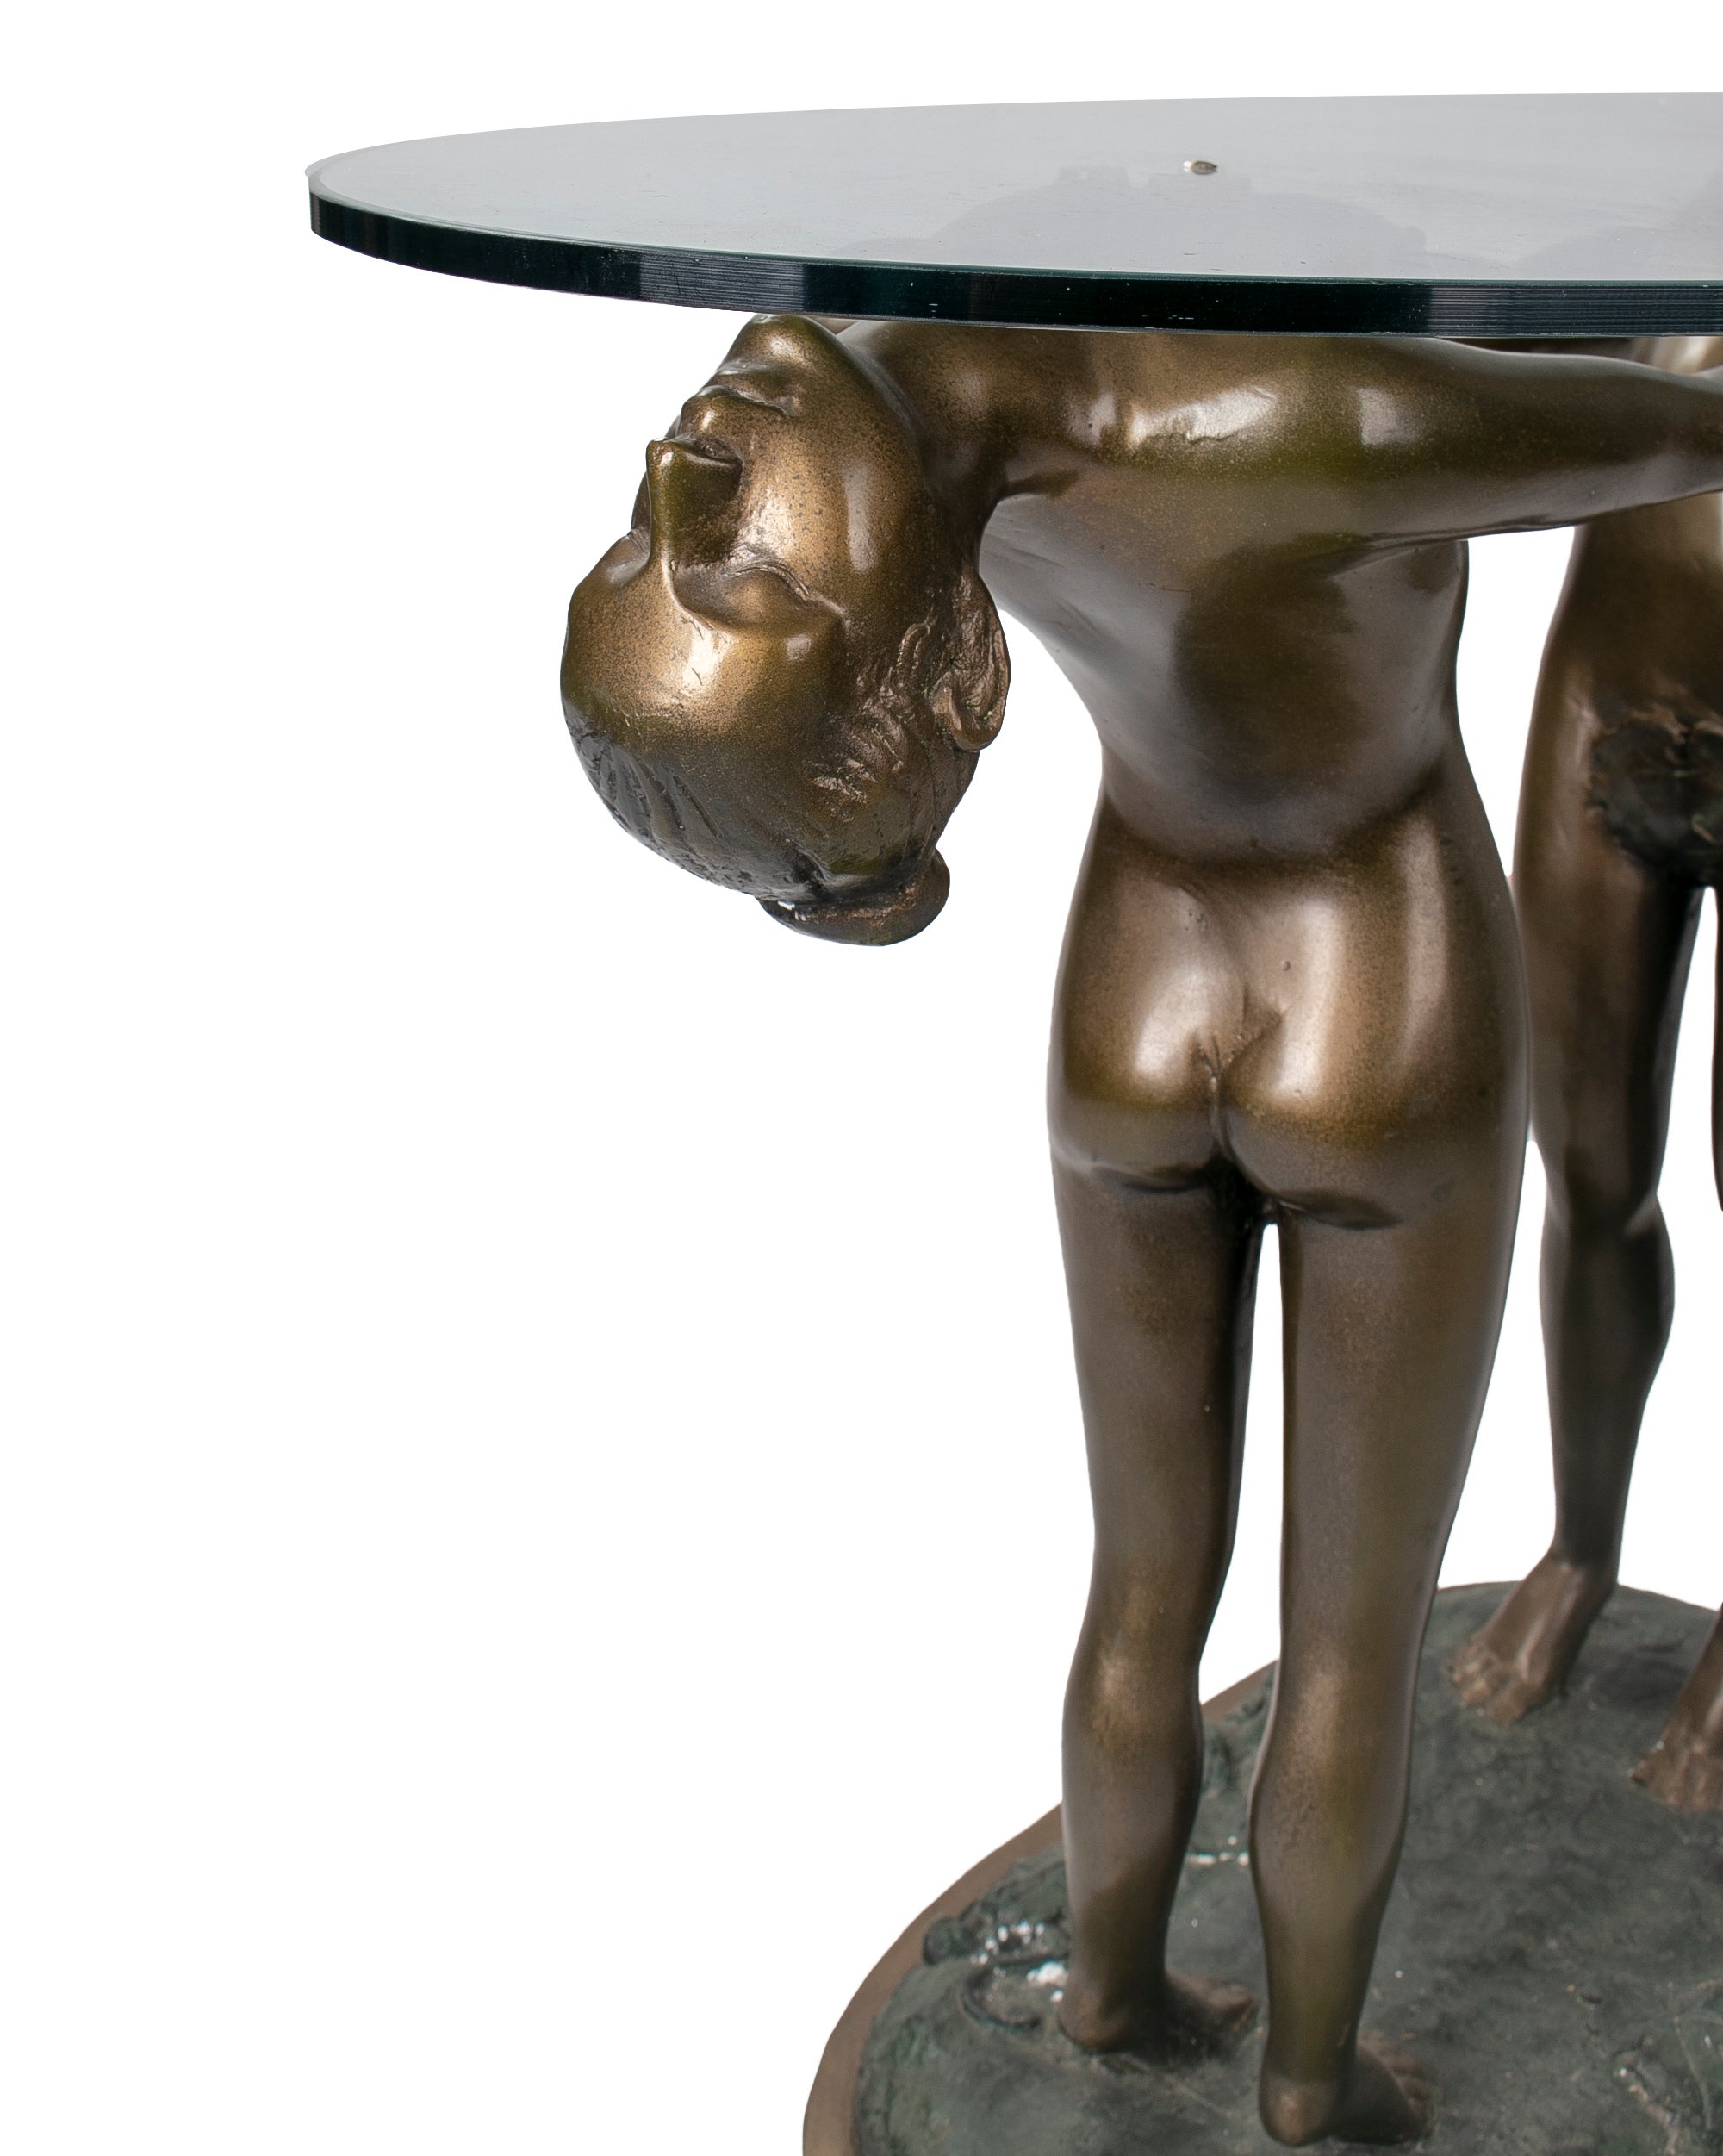 Mesa de Pedestal con Hombre y Mujer de Bronce con Tapa de Cristal, de los Años 80